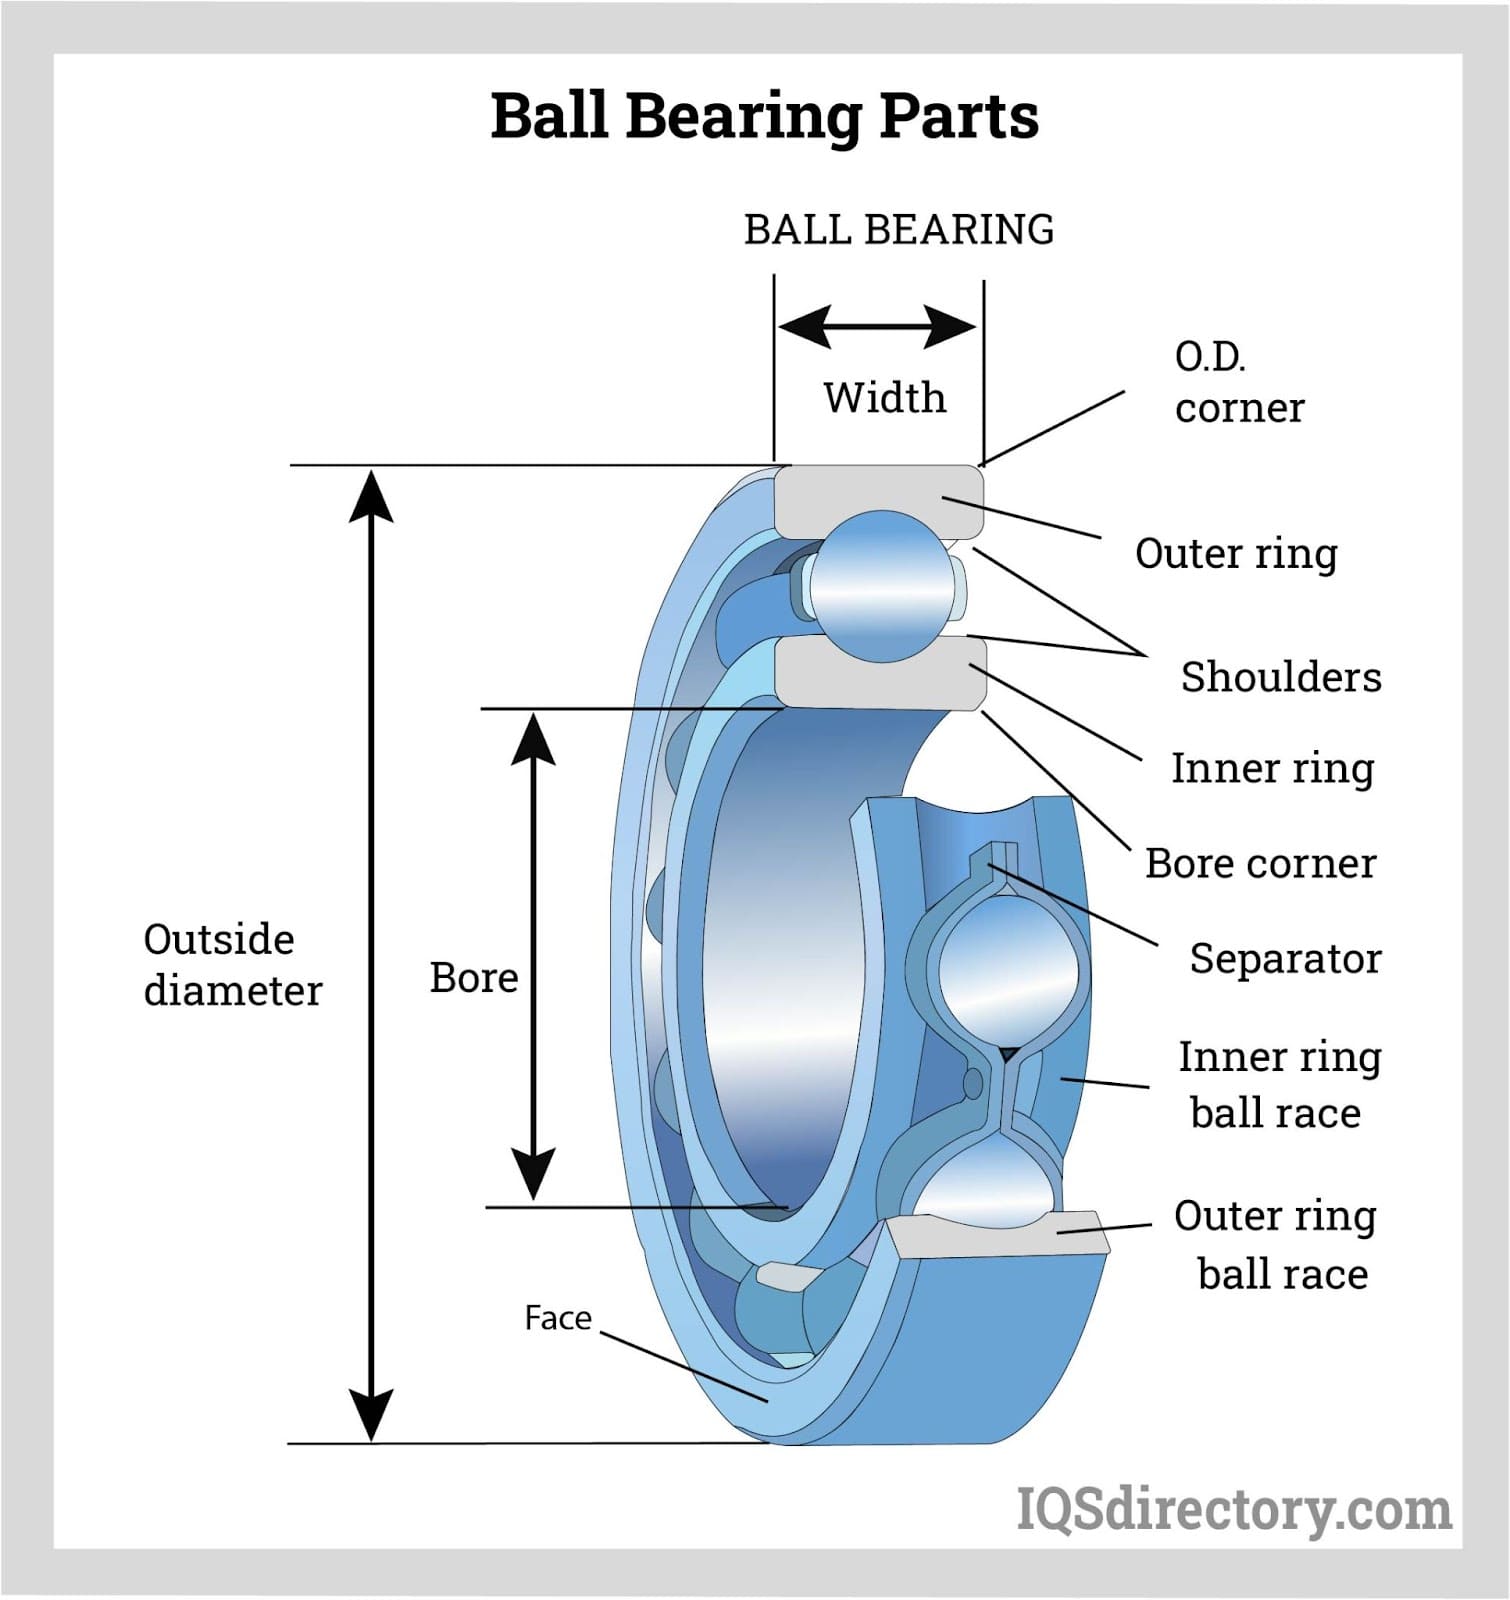 The 3 Parts of a Ball Bearing, Bearings